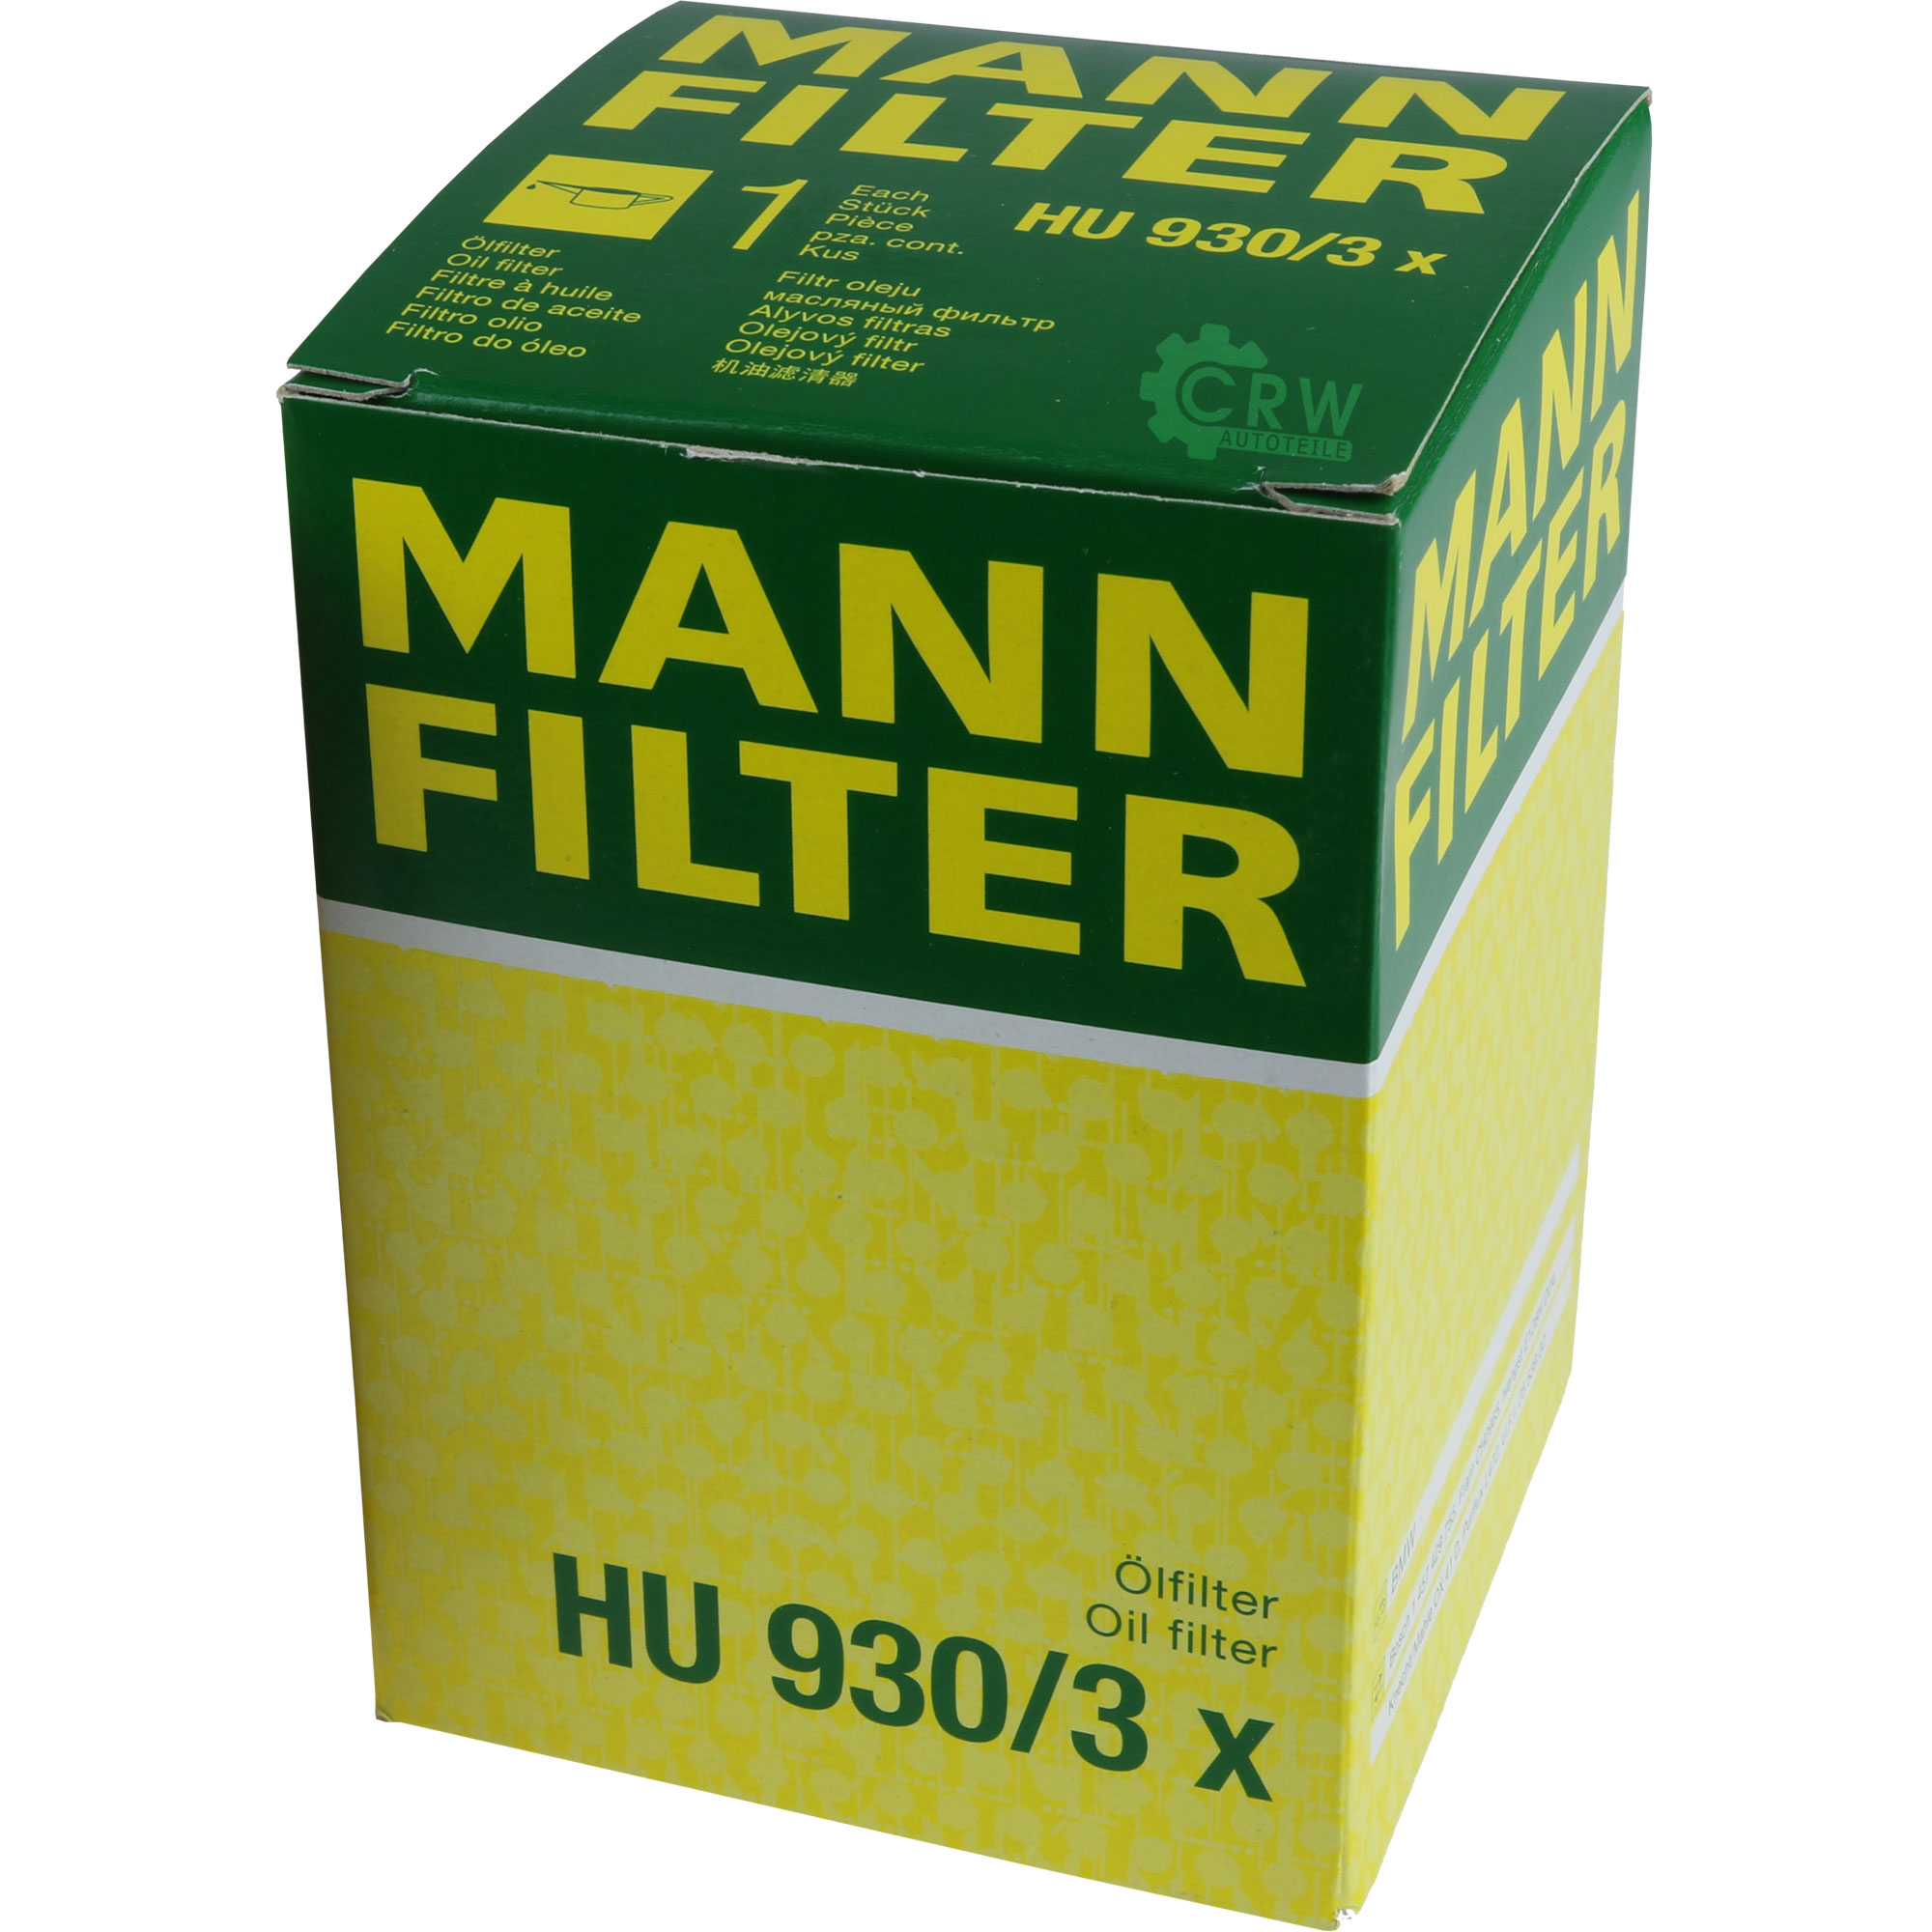 MANN-FILTER Ölfilter HU 930/3 x Oil Filter